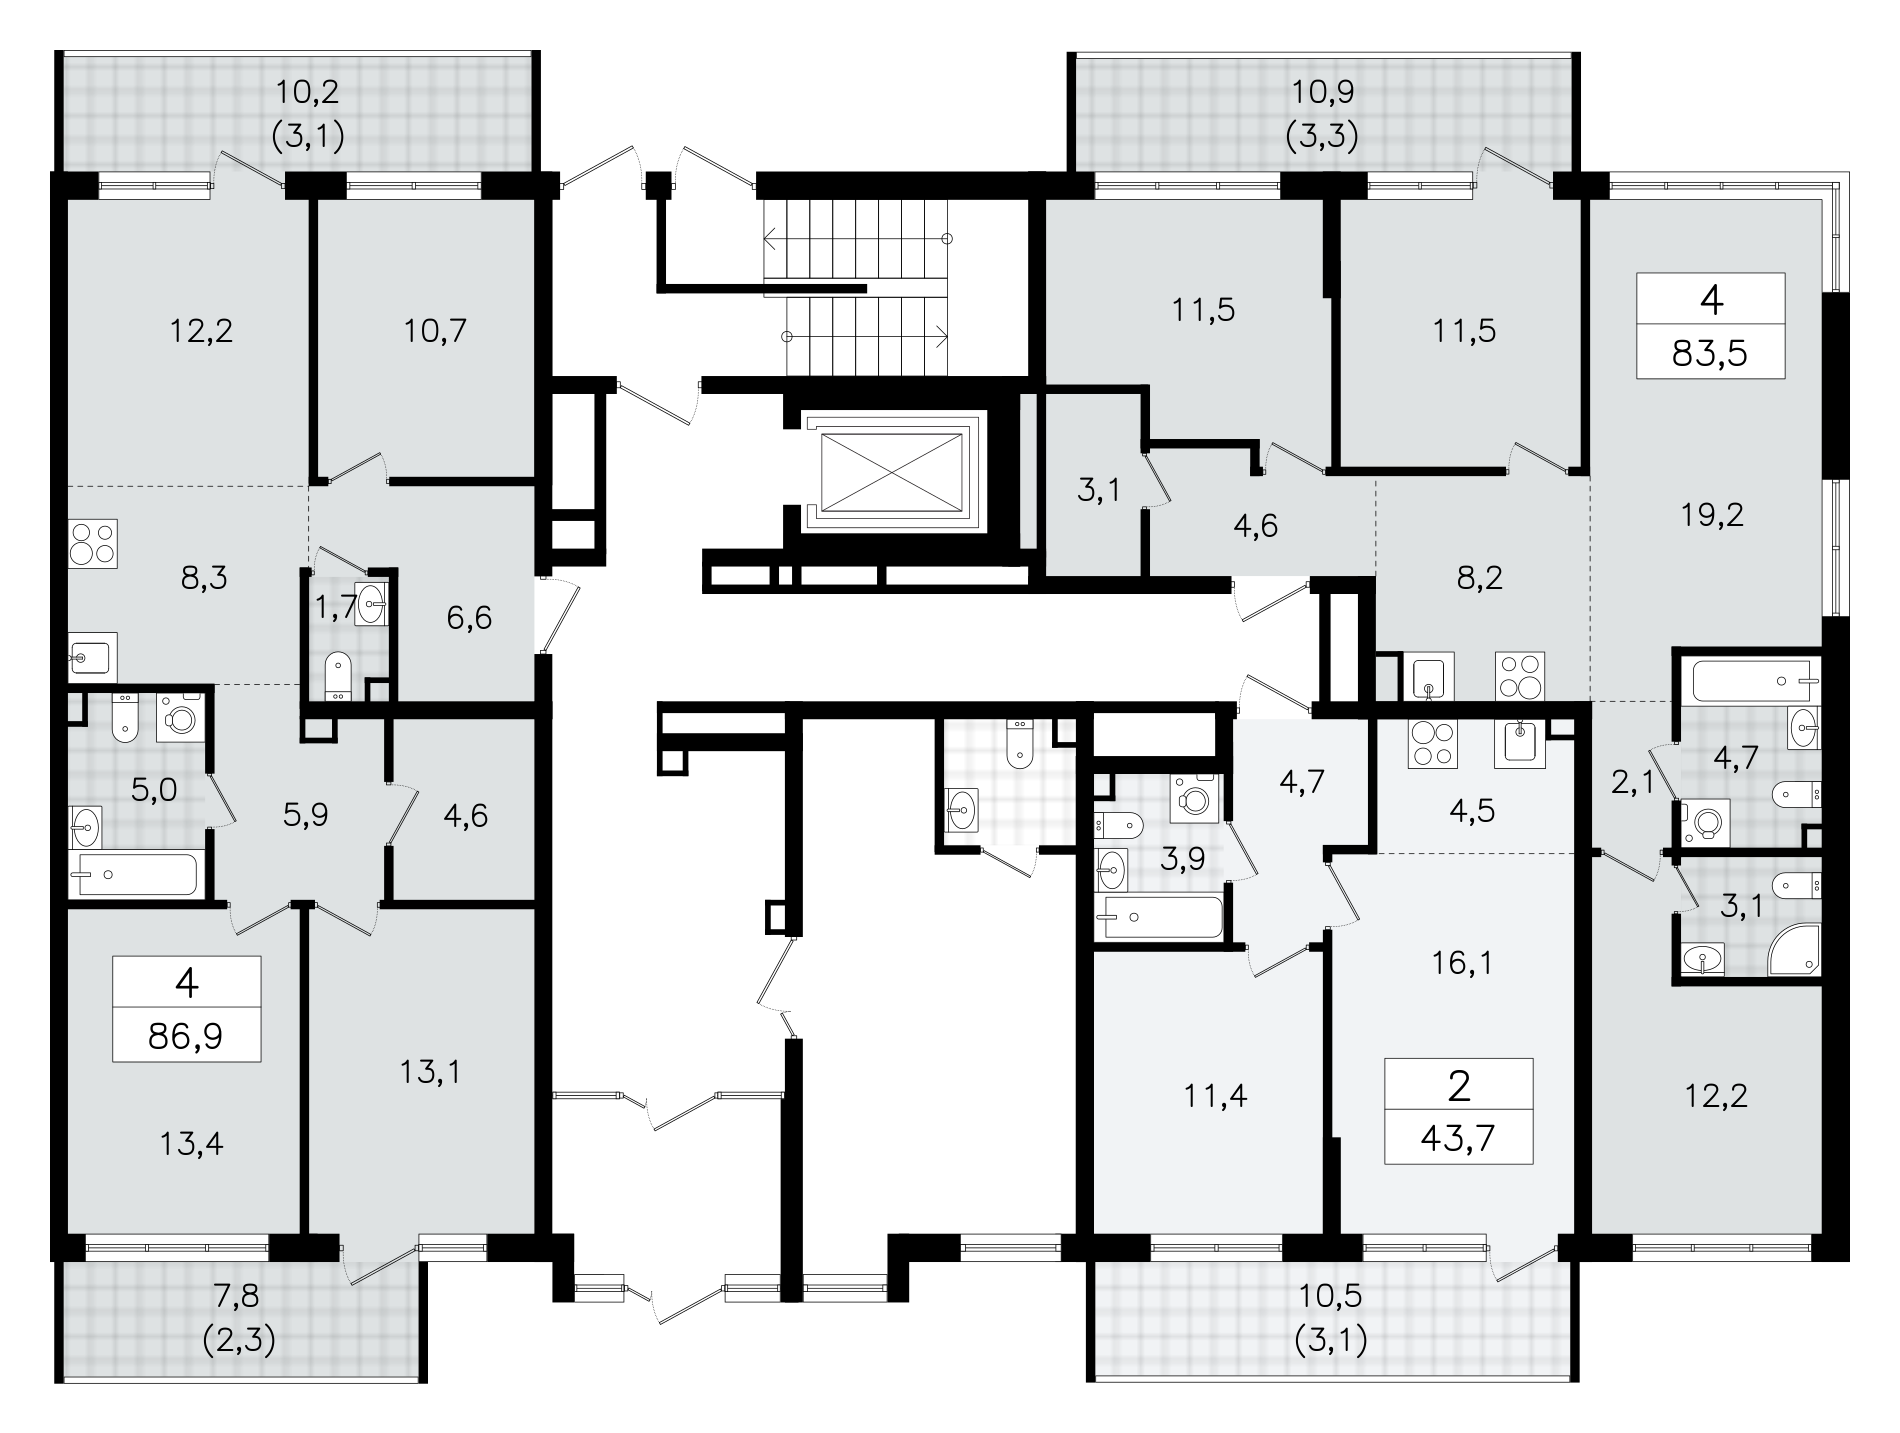 4-комнатная (Евро) квартира, 83.5 м² в ЖК "А101 Всеволожск" - планировка этажа